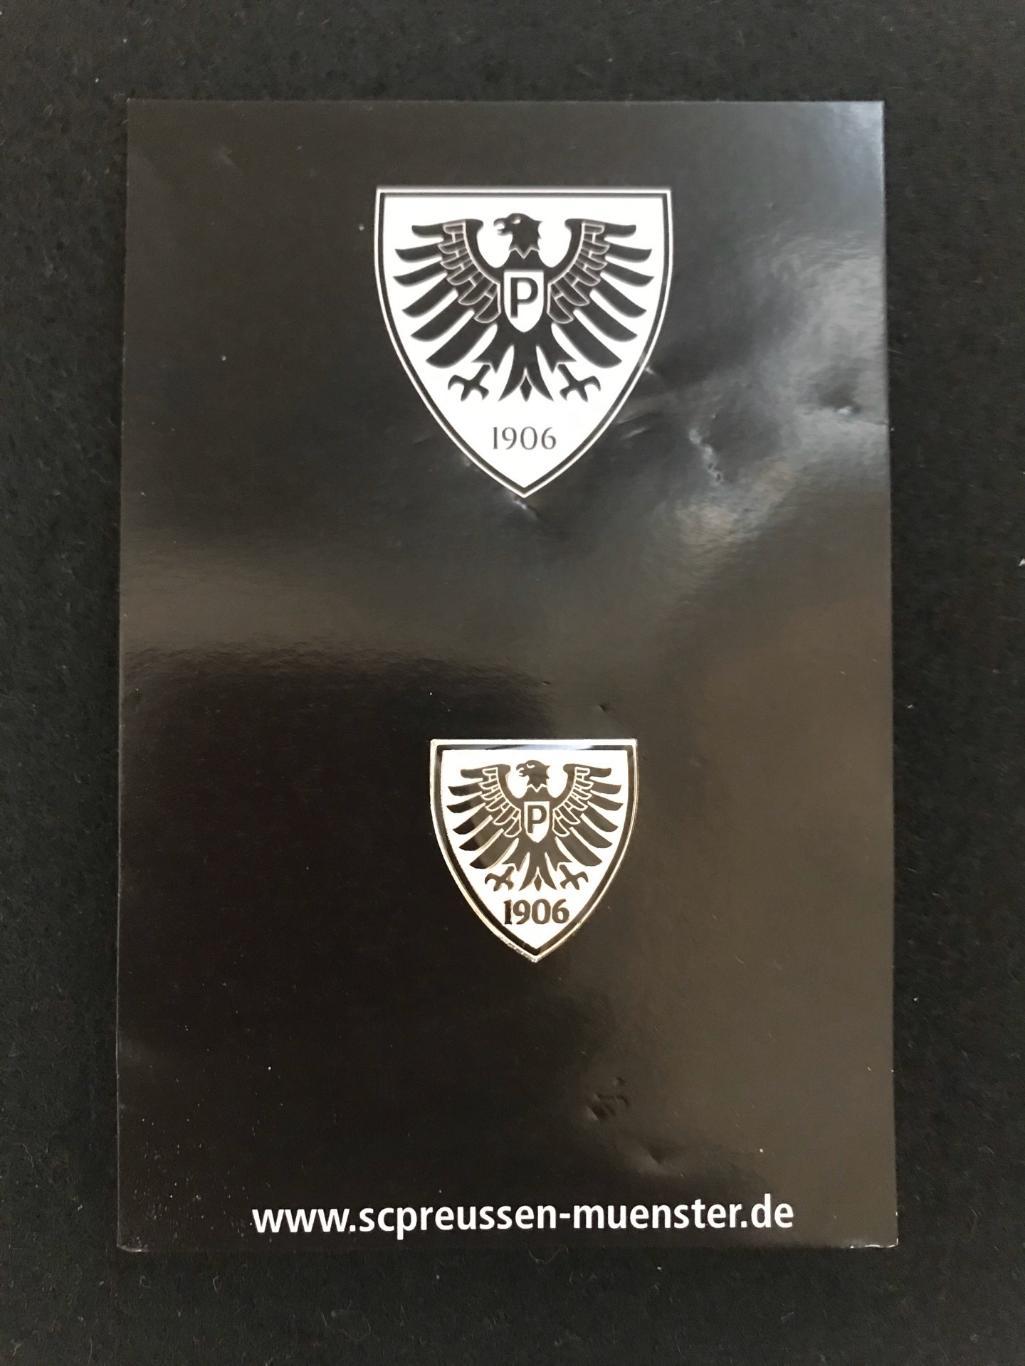 Пройссен Мюнстр Германия официальный лого